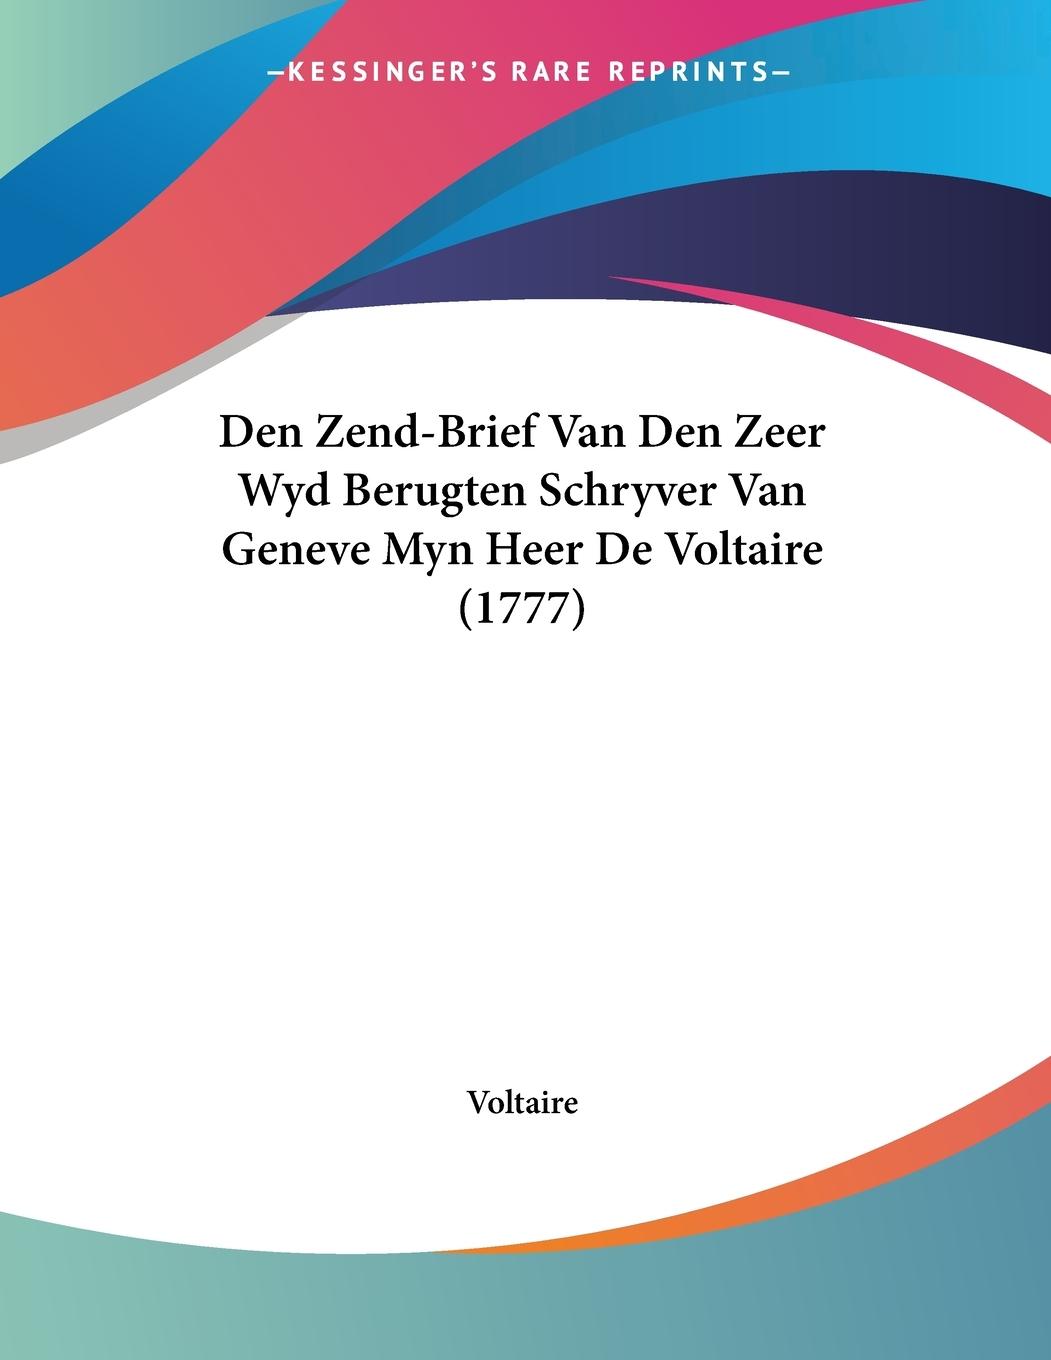 Den Zend-Brief Van Den Zeer Wyd Berugten Schryver Van Geneve Myn Heer De Voltaire (1777) - Voltaire